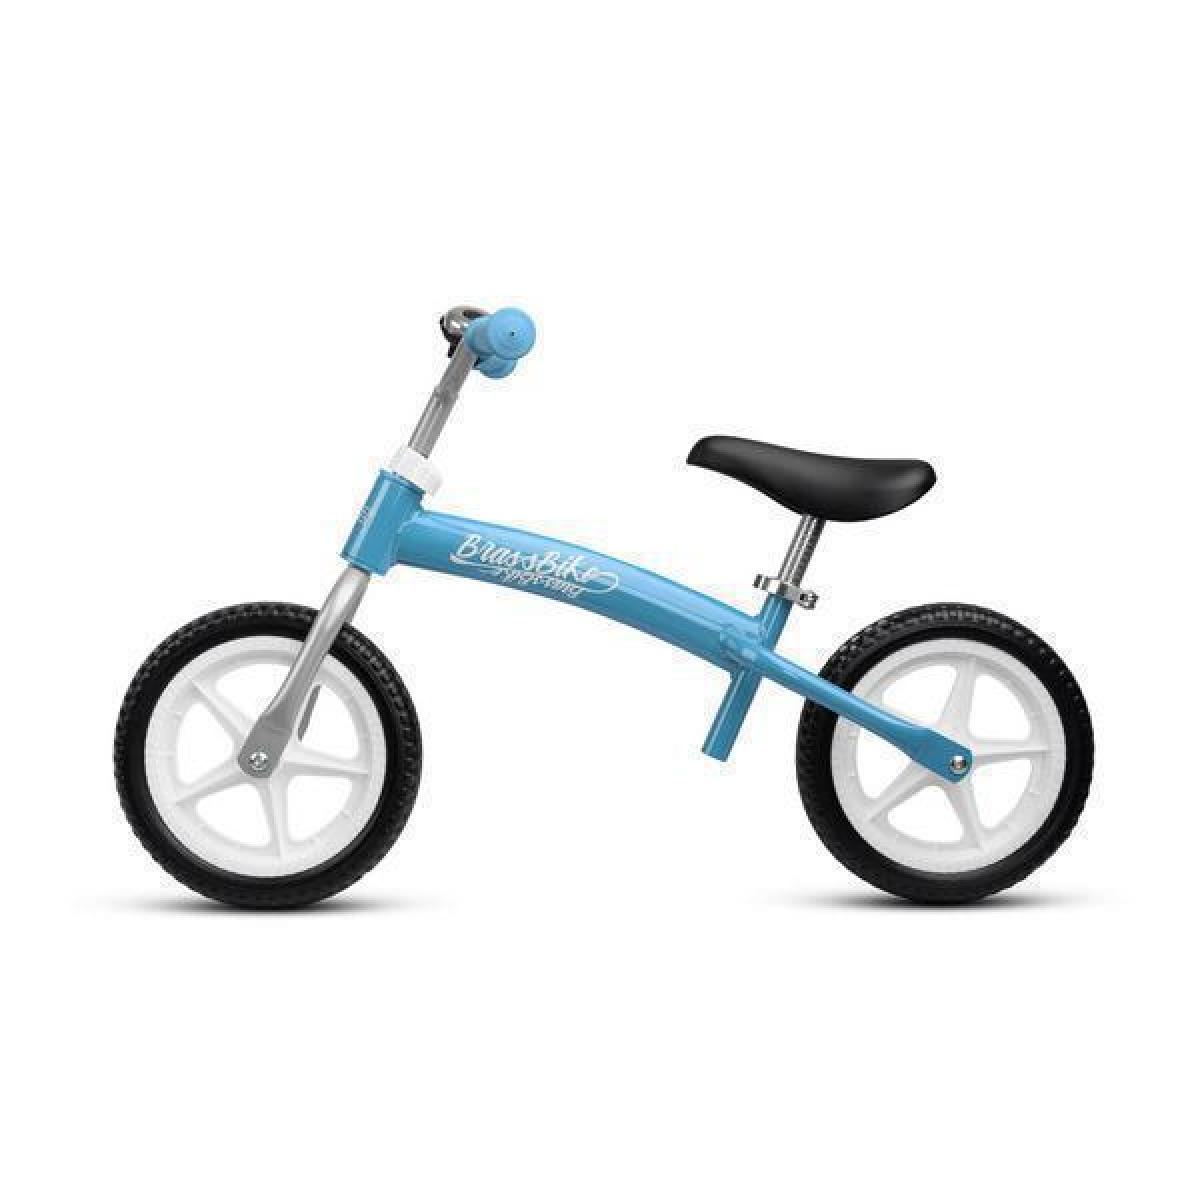 Ποδήλατο Ισορροπίας 3-6 Ετών Metal Balance Bike Brass Toyz By Caretero Μπλε